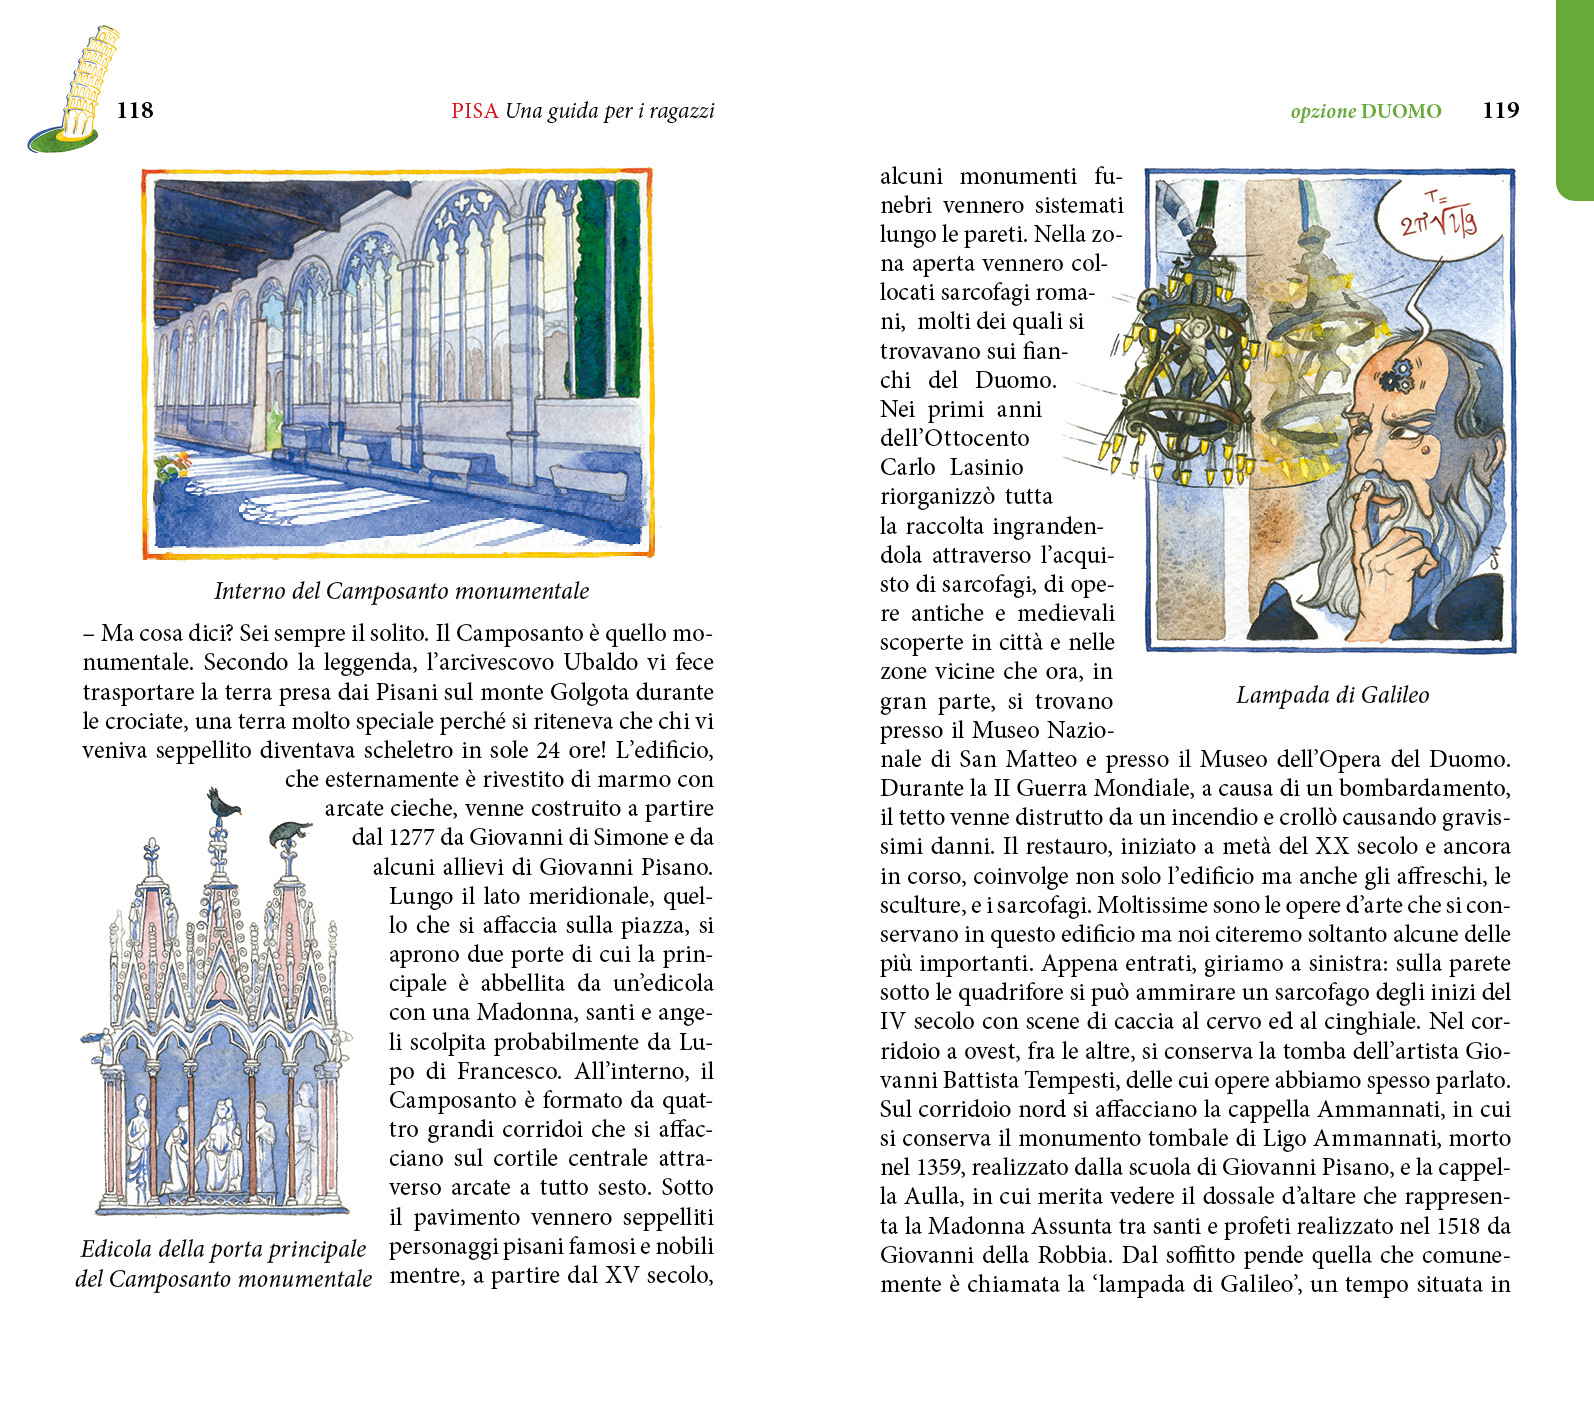 8/ - PISA Una guida per i ragazzi. terza edizione con nuovi itinerari e nuove illustrazioni